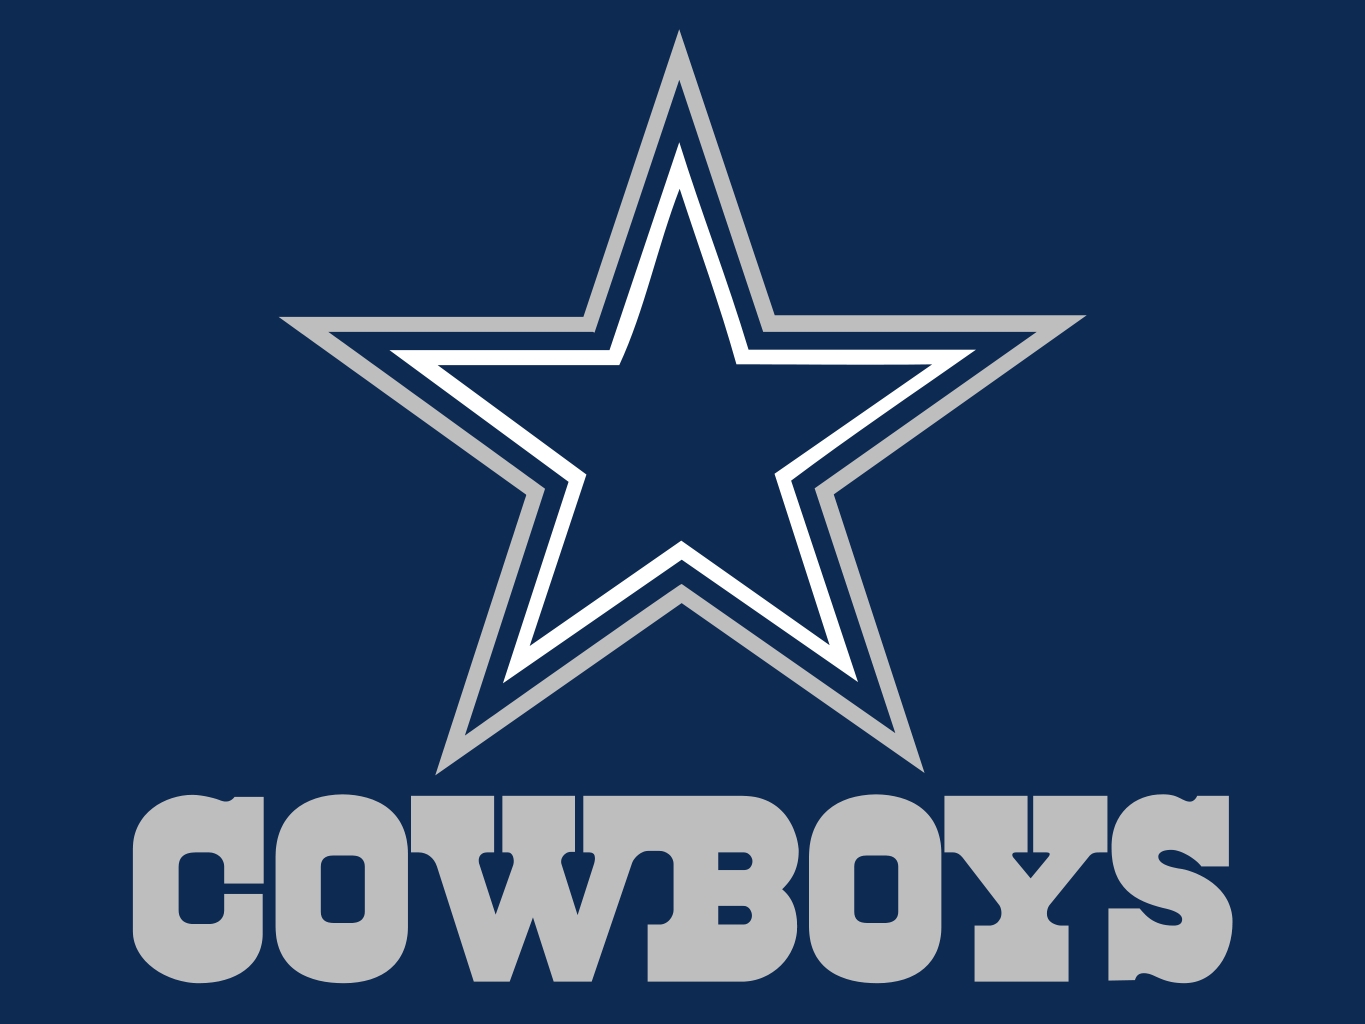 NFL Teams Dallas Cowboys Collins Flags Blog